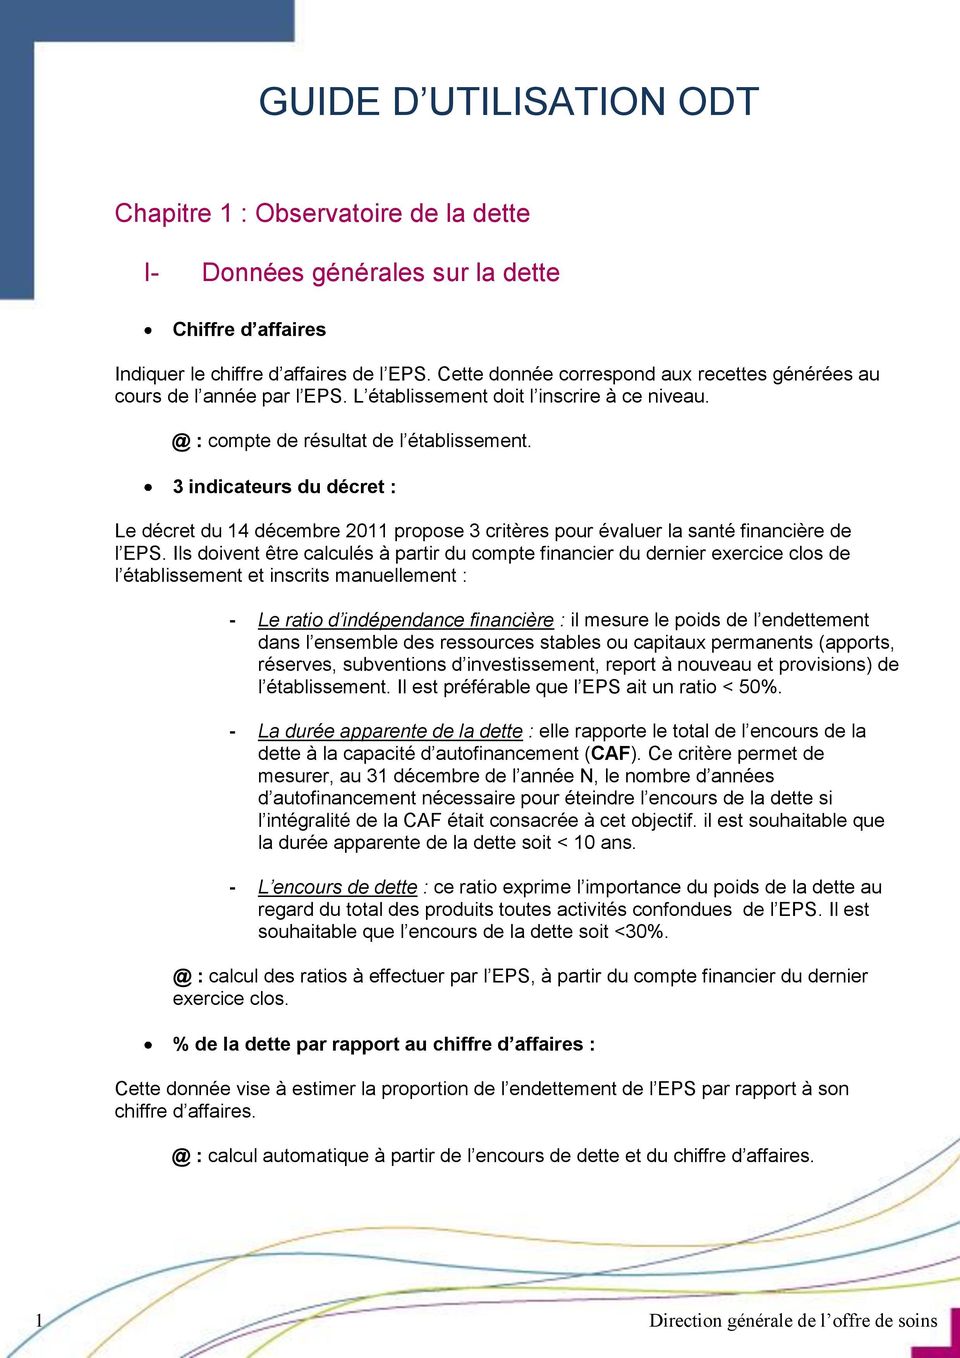 3 indicateurs du décret : Le décret du 14 décembre 2011 propose 3 critères pour évaluer la santé financière de l EPS.